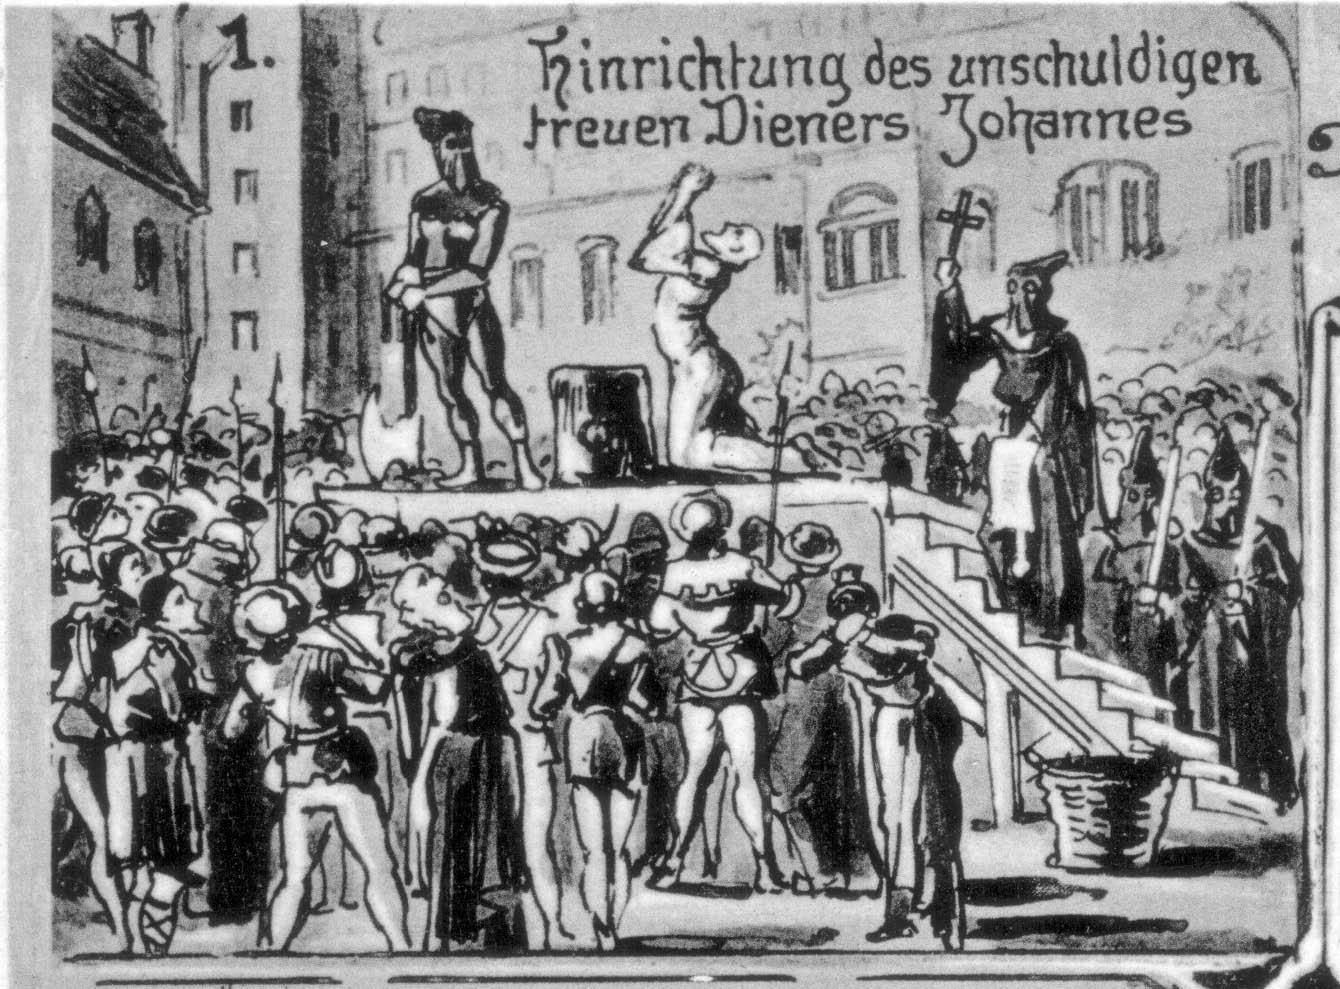 Hinrichtung des unschuldigen Dieners (Ausschnitt aus einer Postkarte des 19. Jahrhunderts)